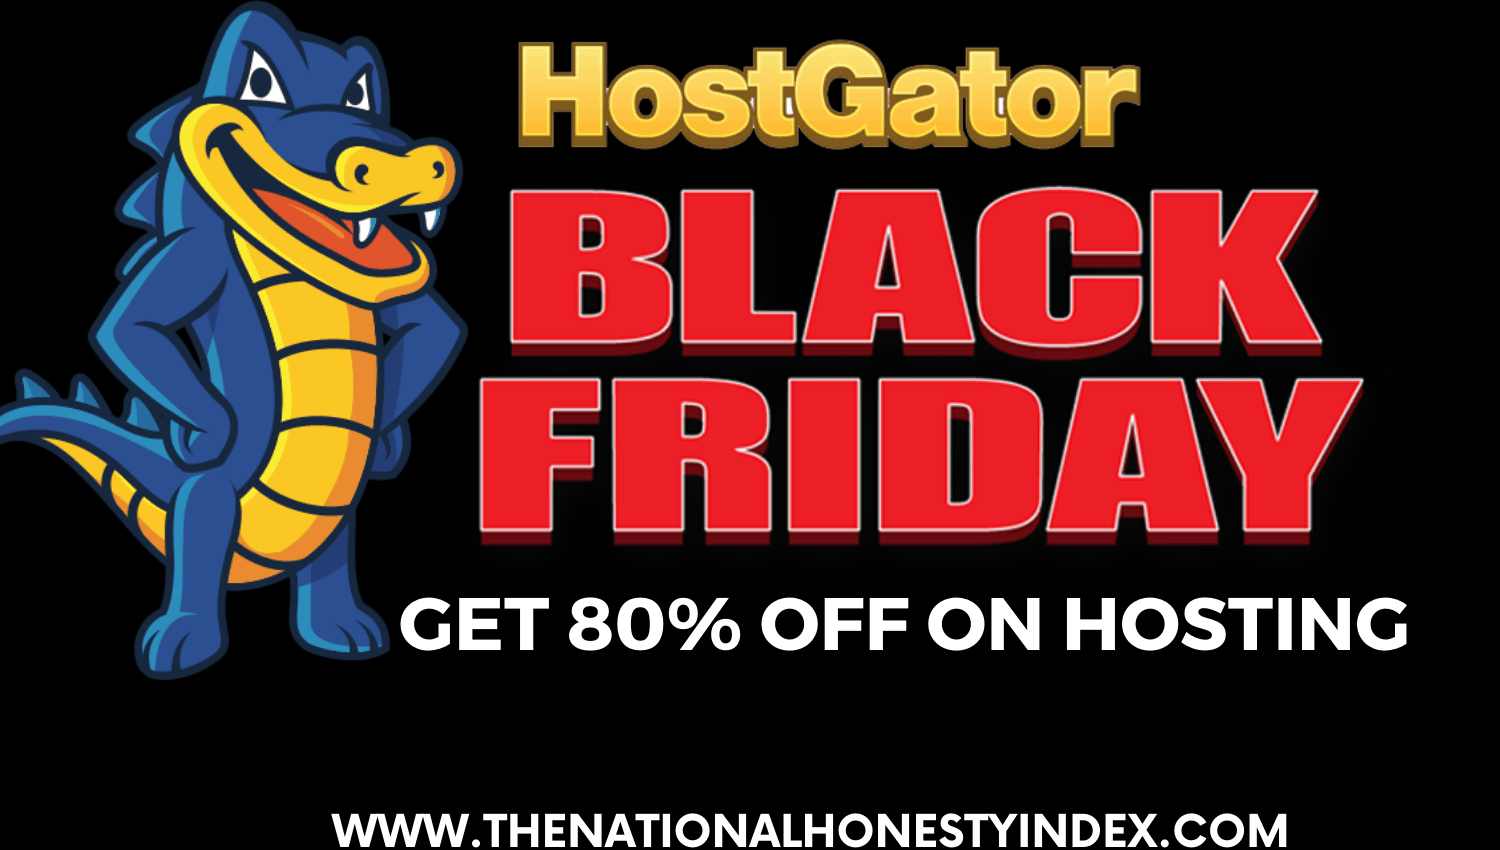 HostGator Black Friday 